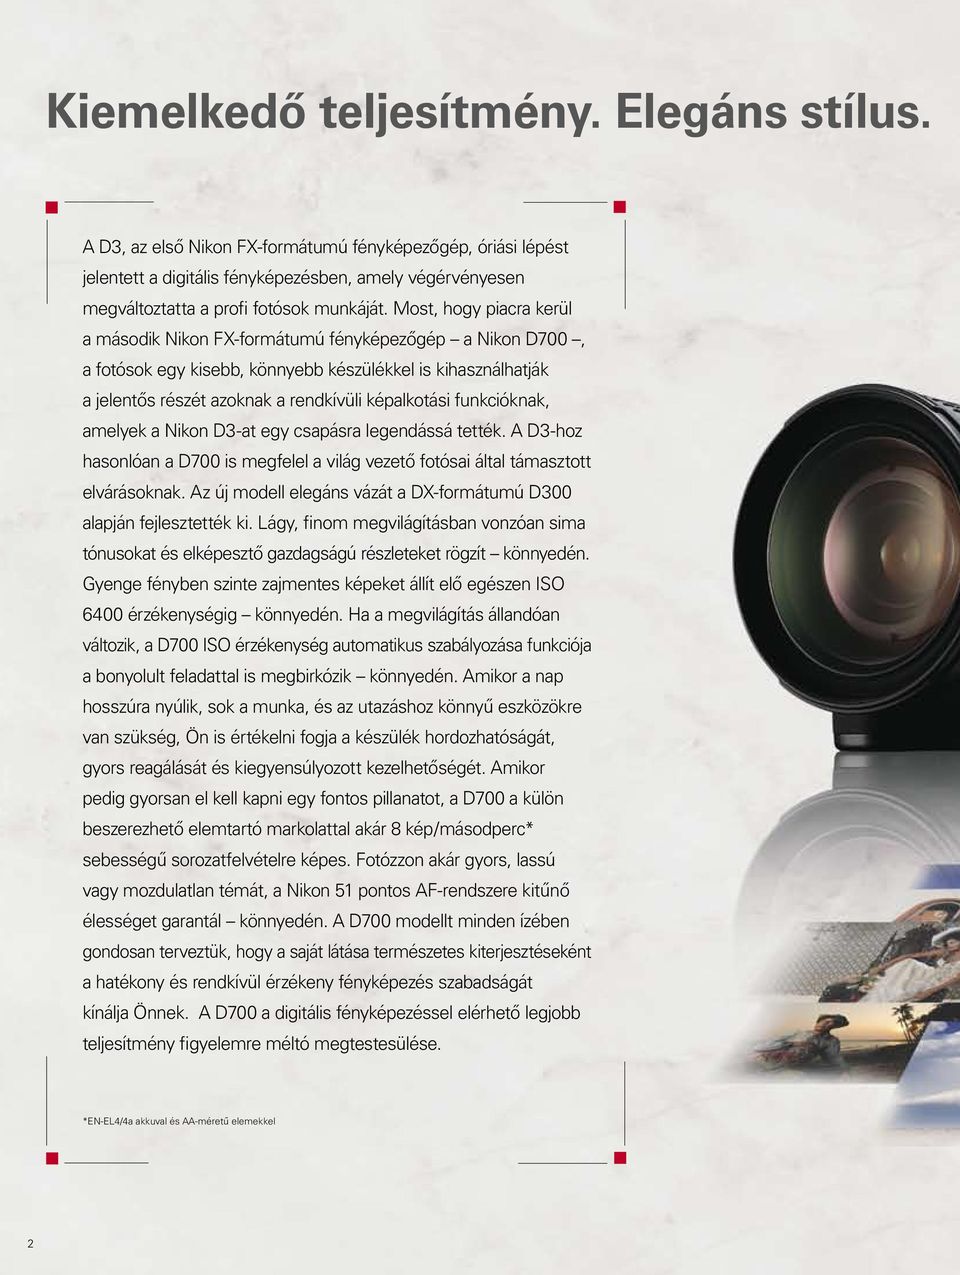 Most, hogy piacra kerül a második Nikon FX-formátumú fényképezőgép a Nikon D700, a fotósok egy kisebb, könnyebb készülékkel is kihasználhatják a jelentős részét azoknak a rendkívüli képalkotási